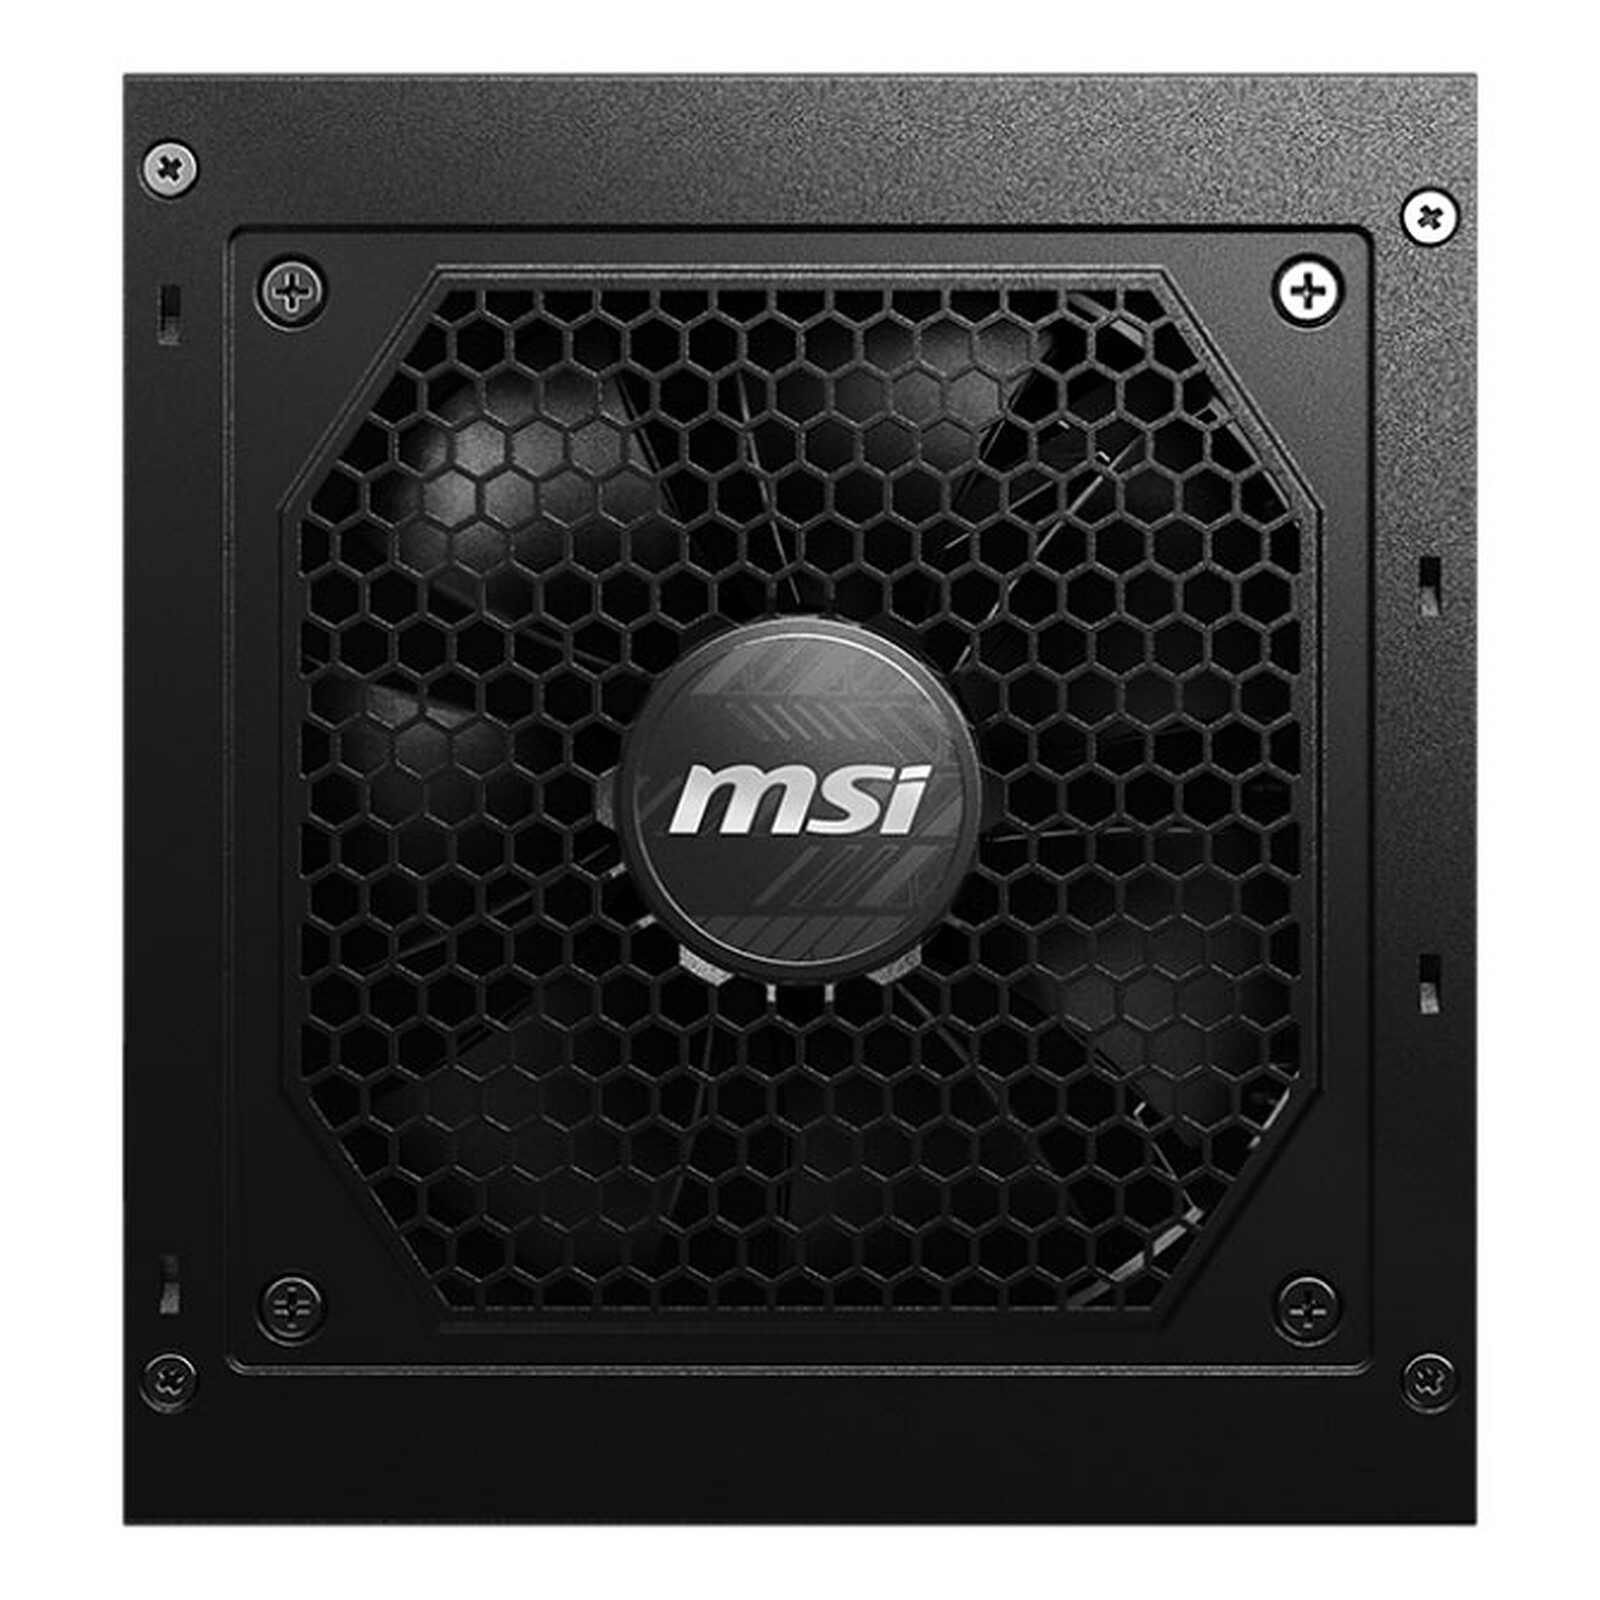 MSI MPG A850GF 850W Power Supply - Black